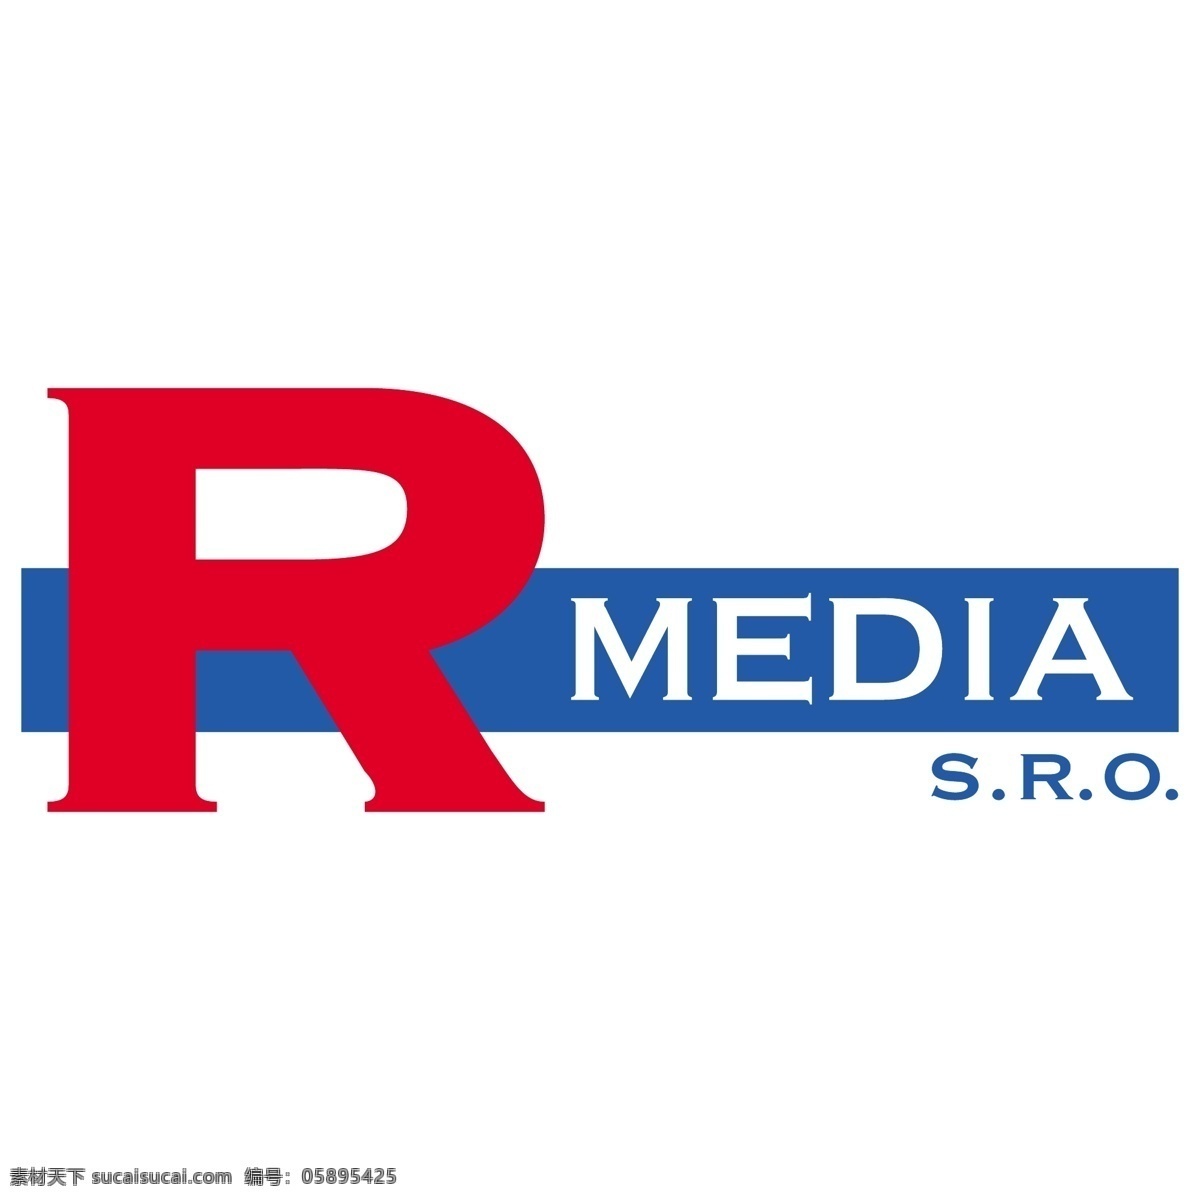 r 媒体 自由 rmedia 标识 psd源文件 logo设计